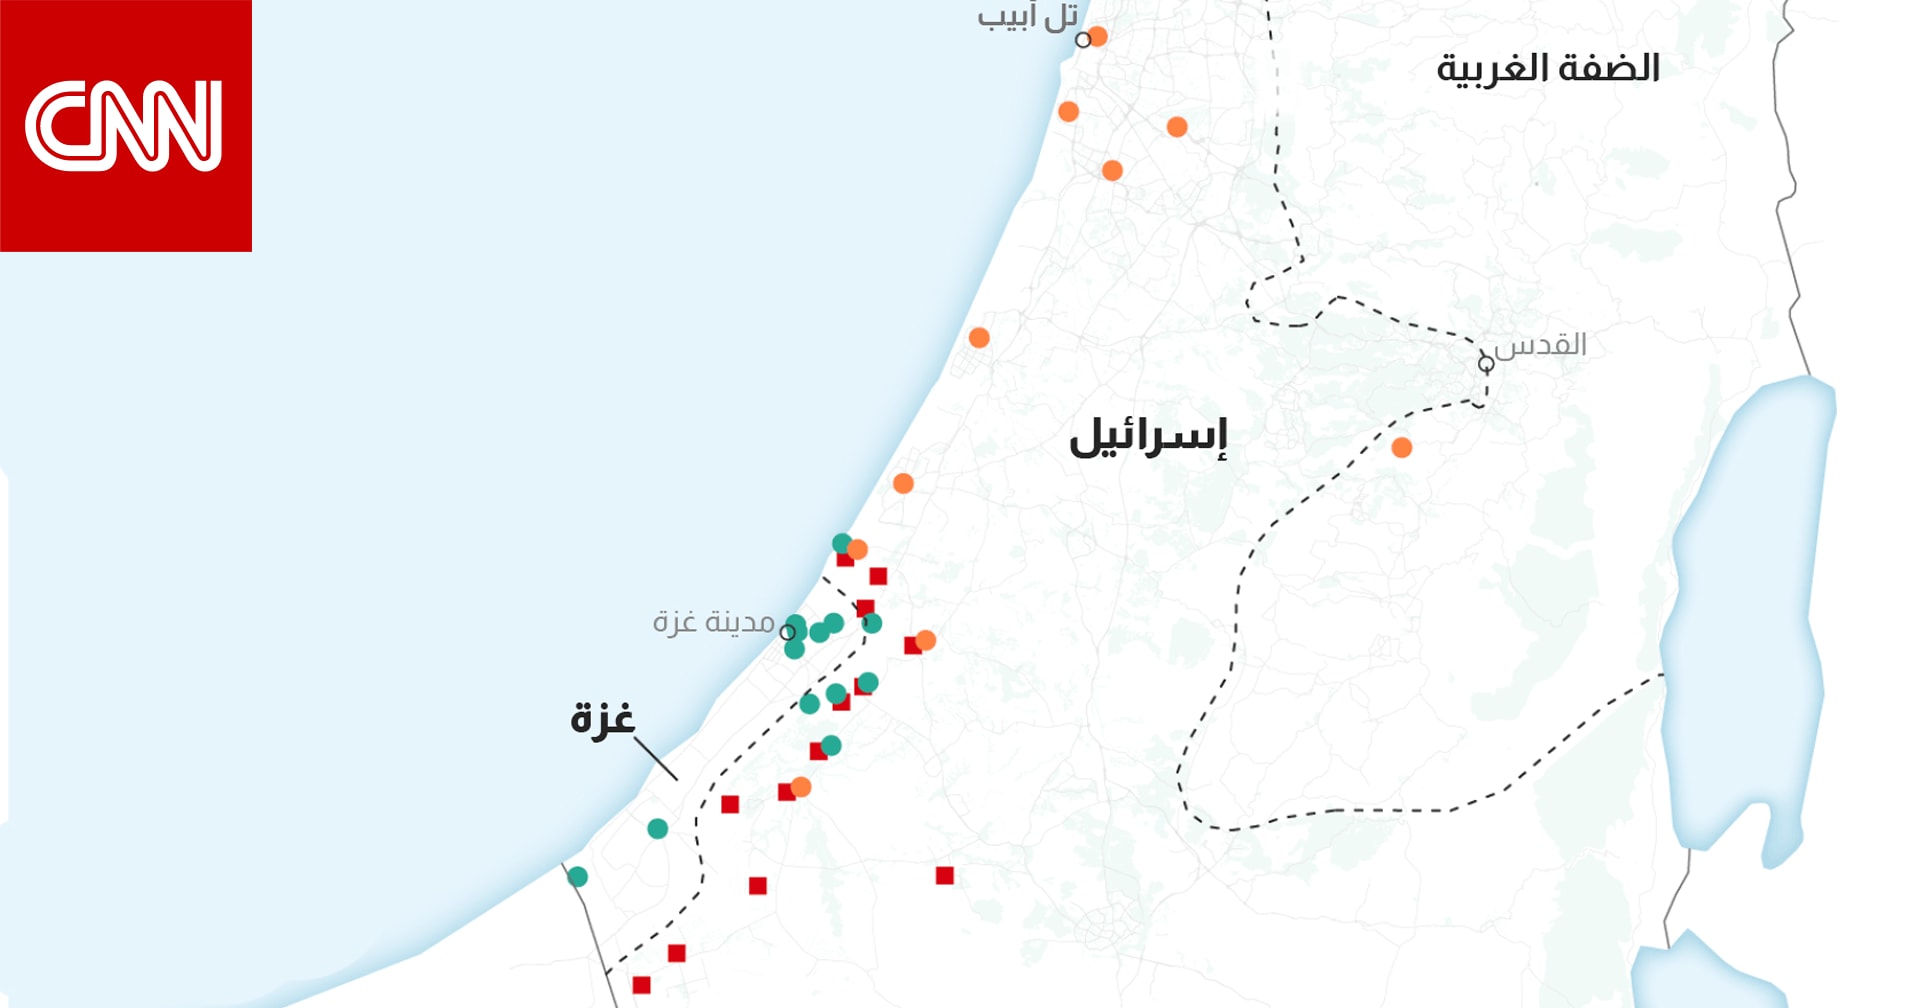 خريطة للمواقع التي تأثرت بالحرب بين الفلسطينيين والإسرائيليين